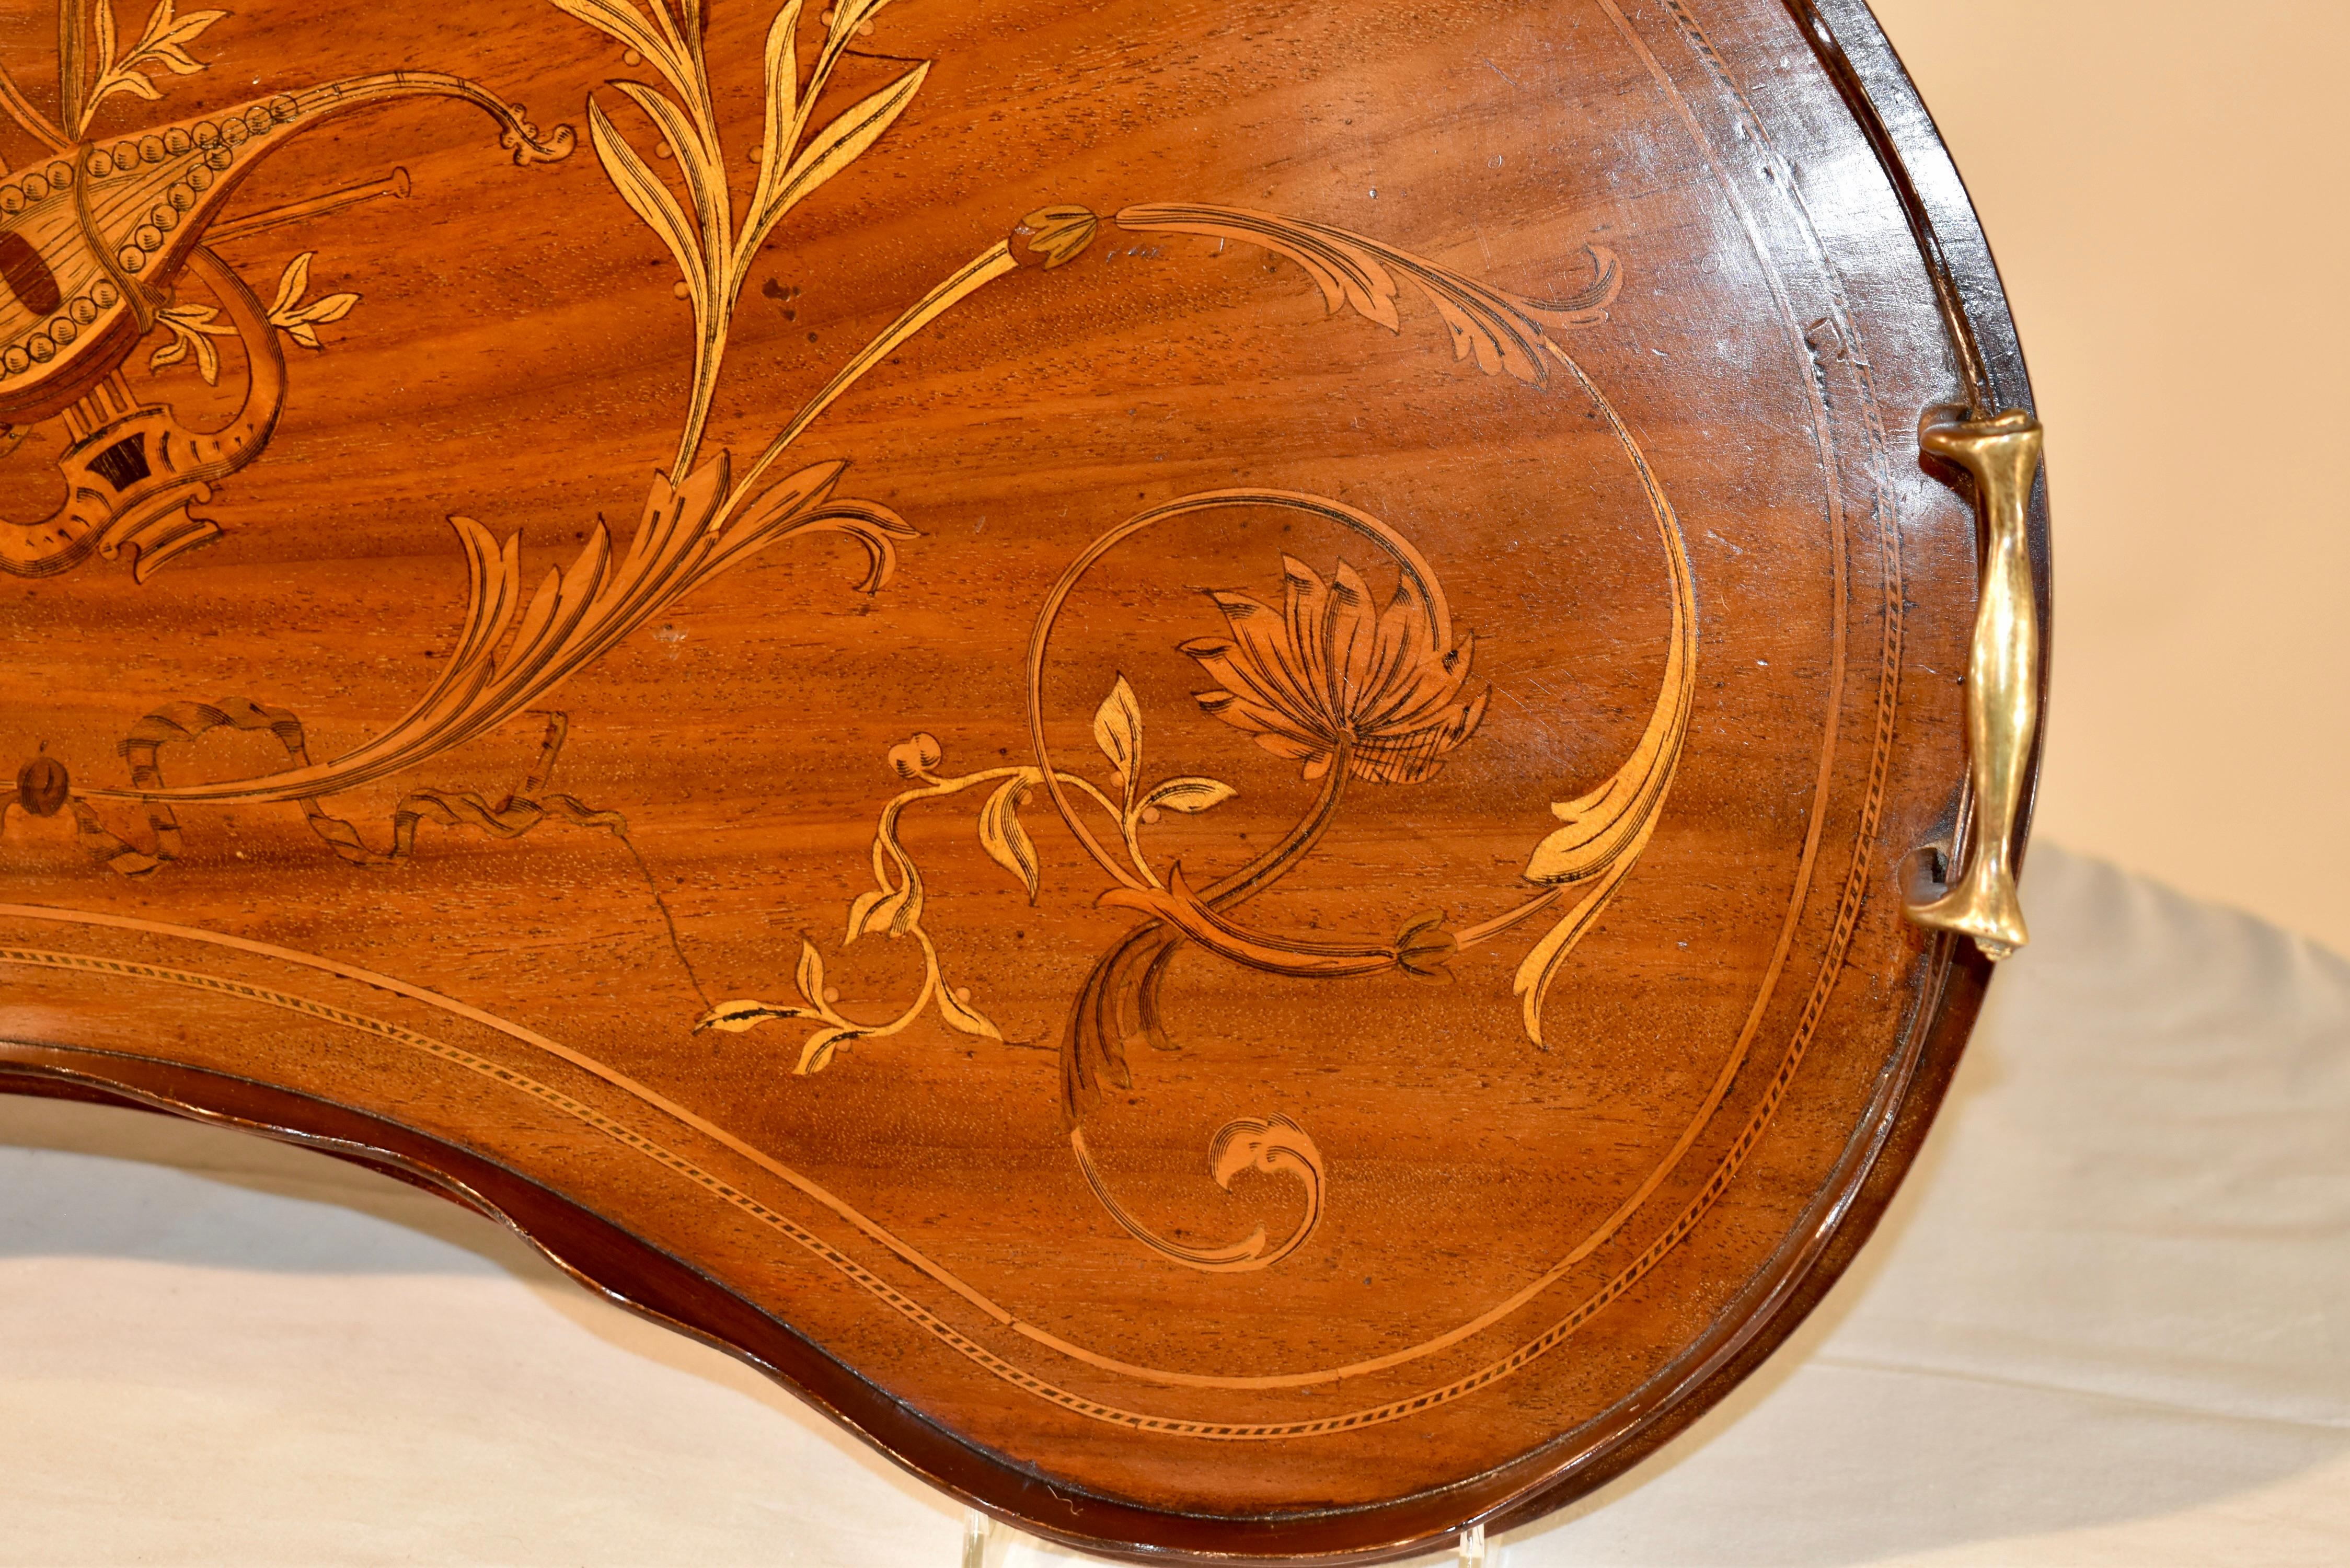 Boxwood Early 19th Century English Mahogany Inlaid Tray For Sale